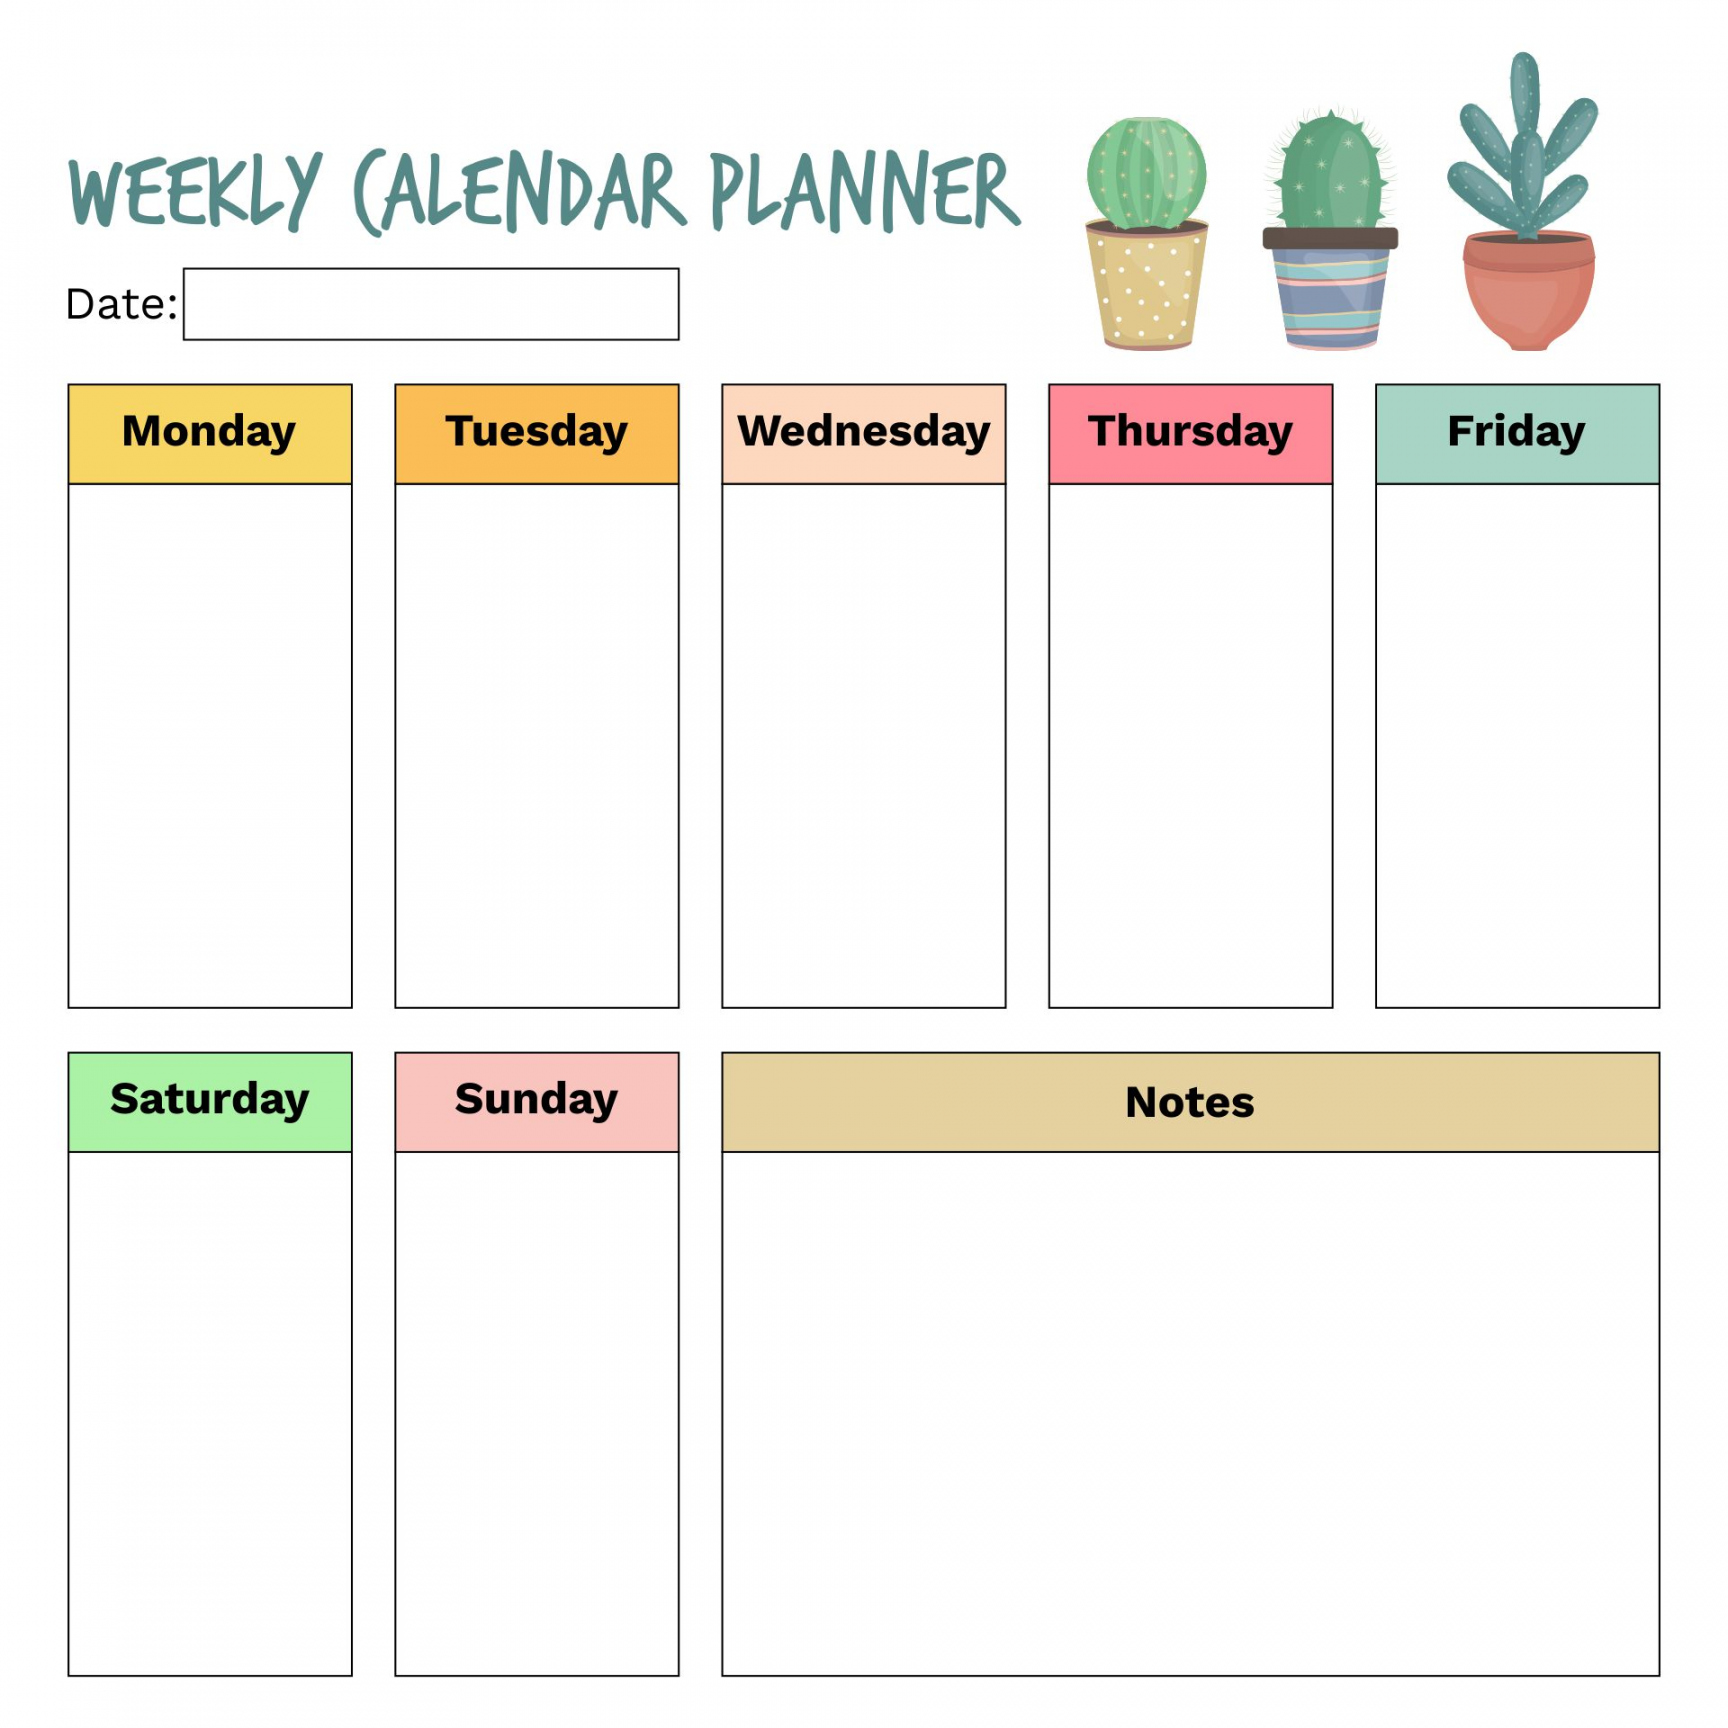 Free Printable Calendar Weekly - Printable -  Best Free Printable Calendar Weekly With Hours - printablee